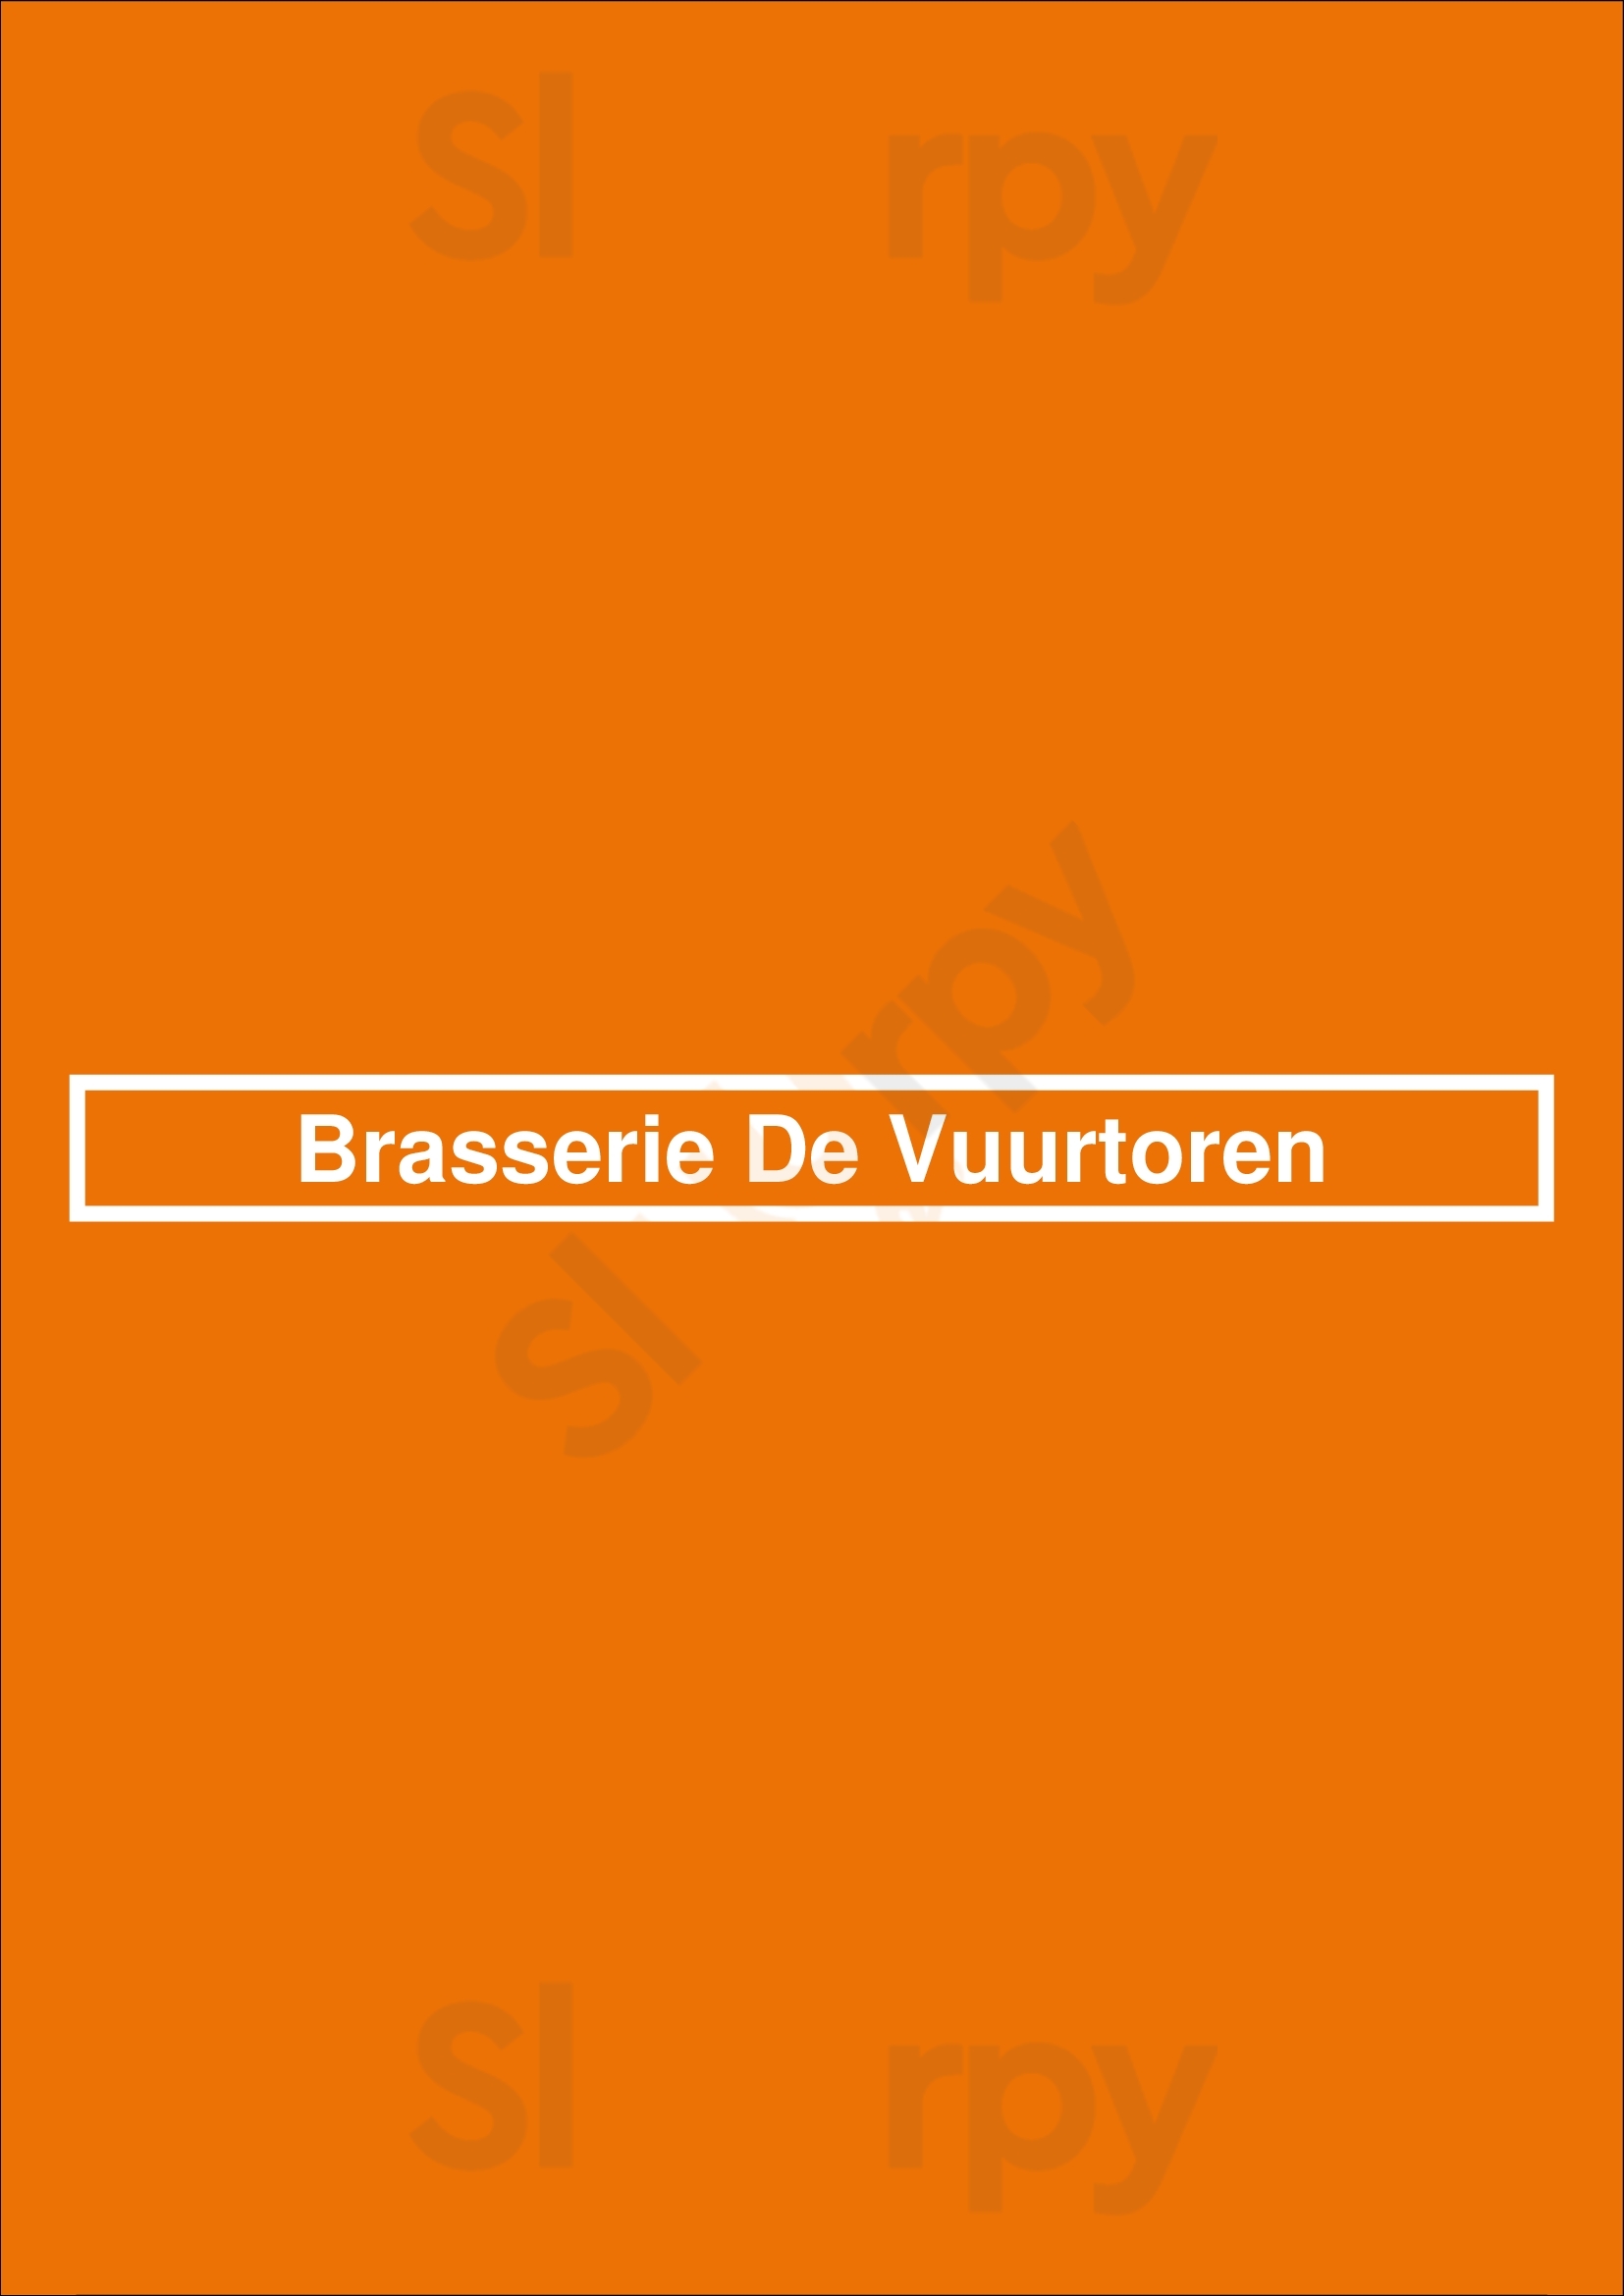 Brasserie De Vuurtoren Nijkerk Menu - 1